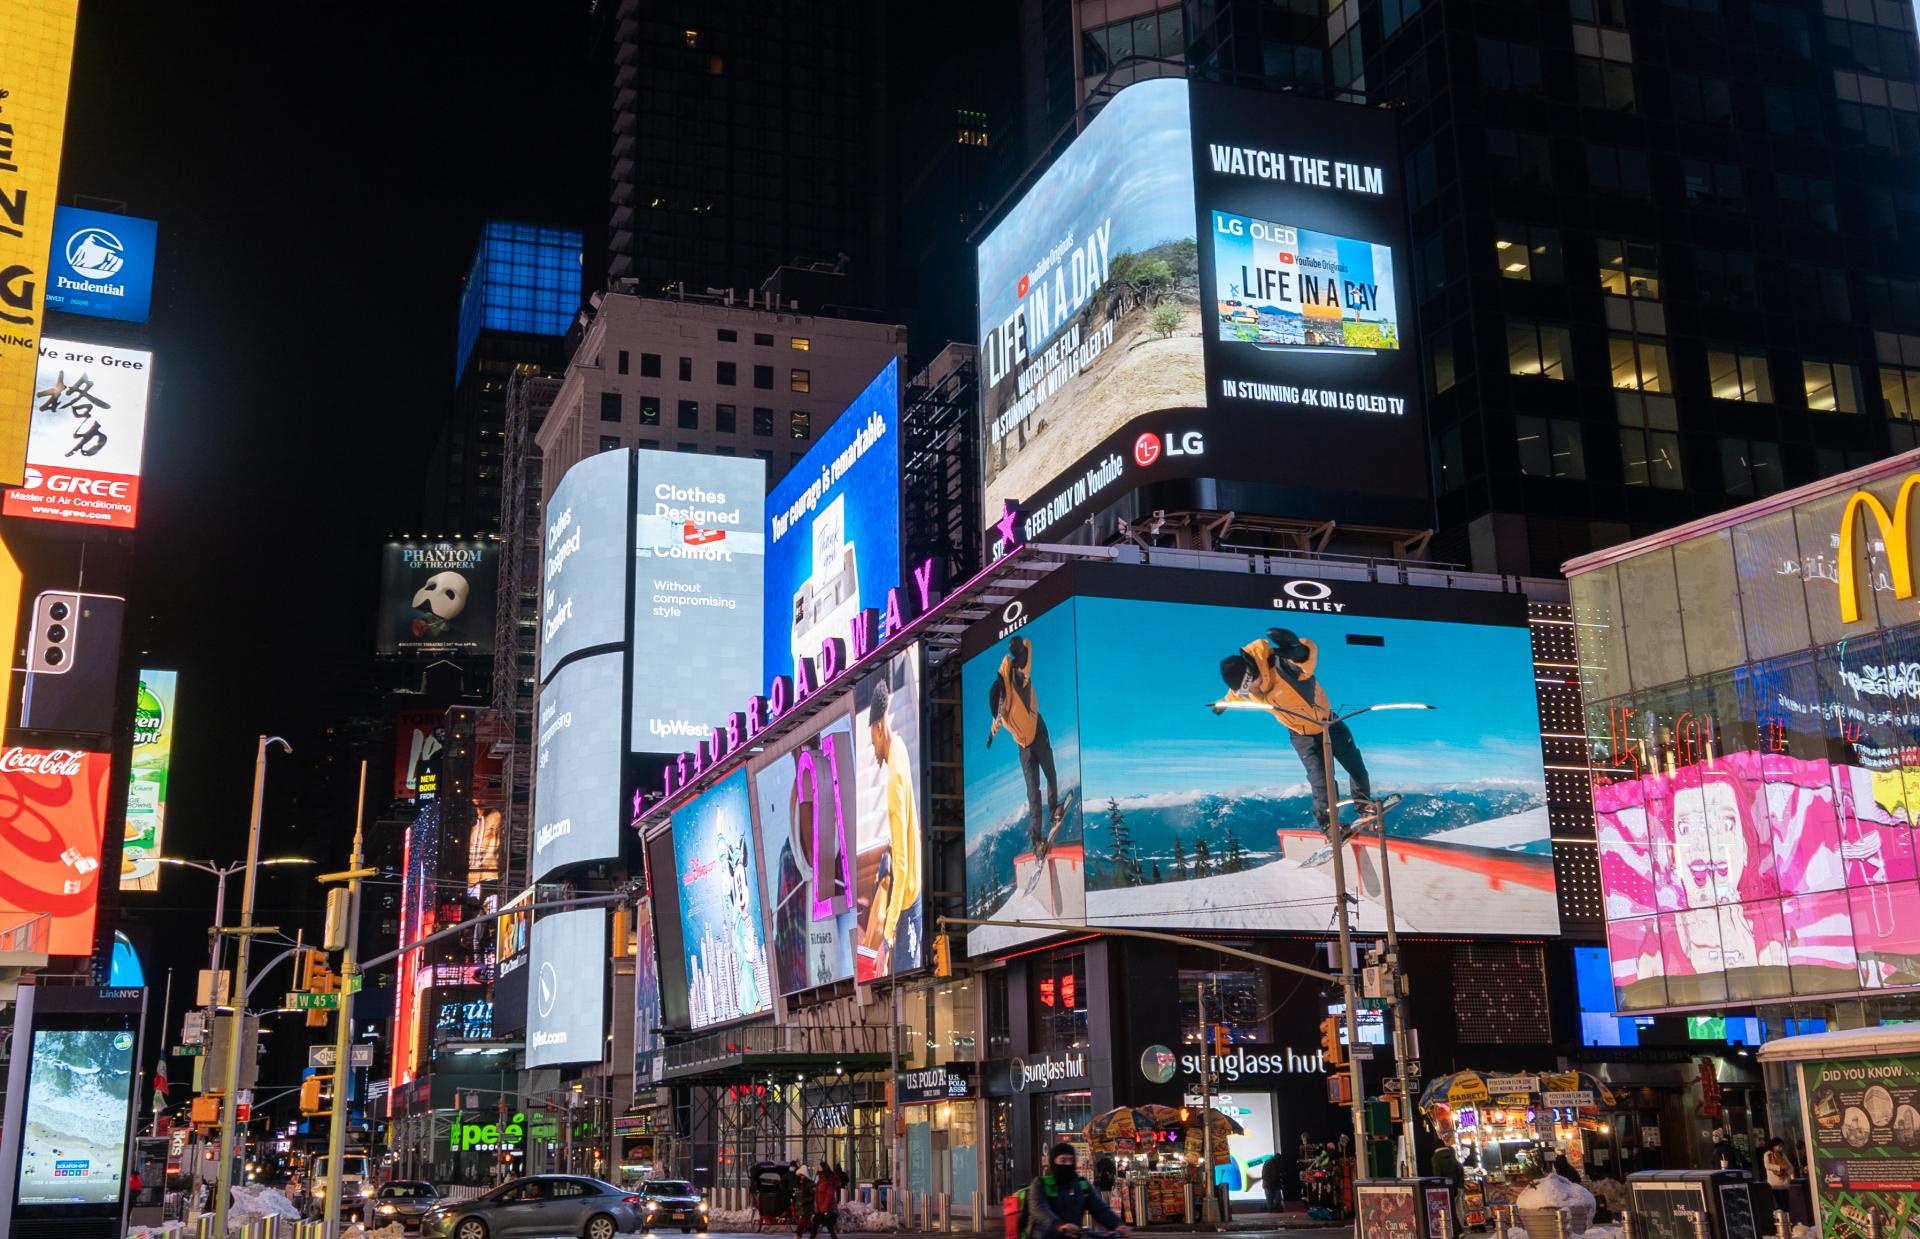 Times Square LIAD advert